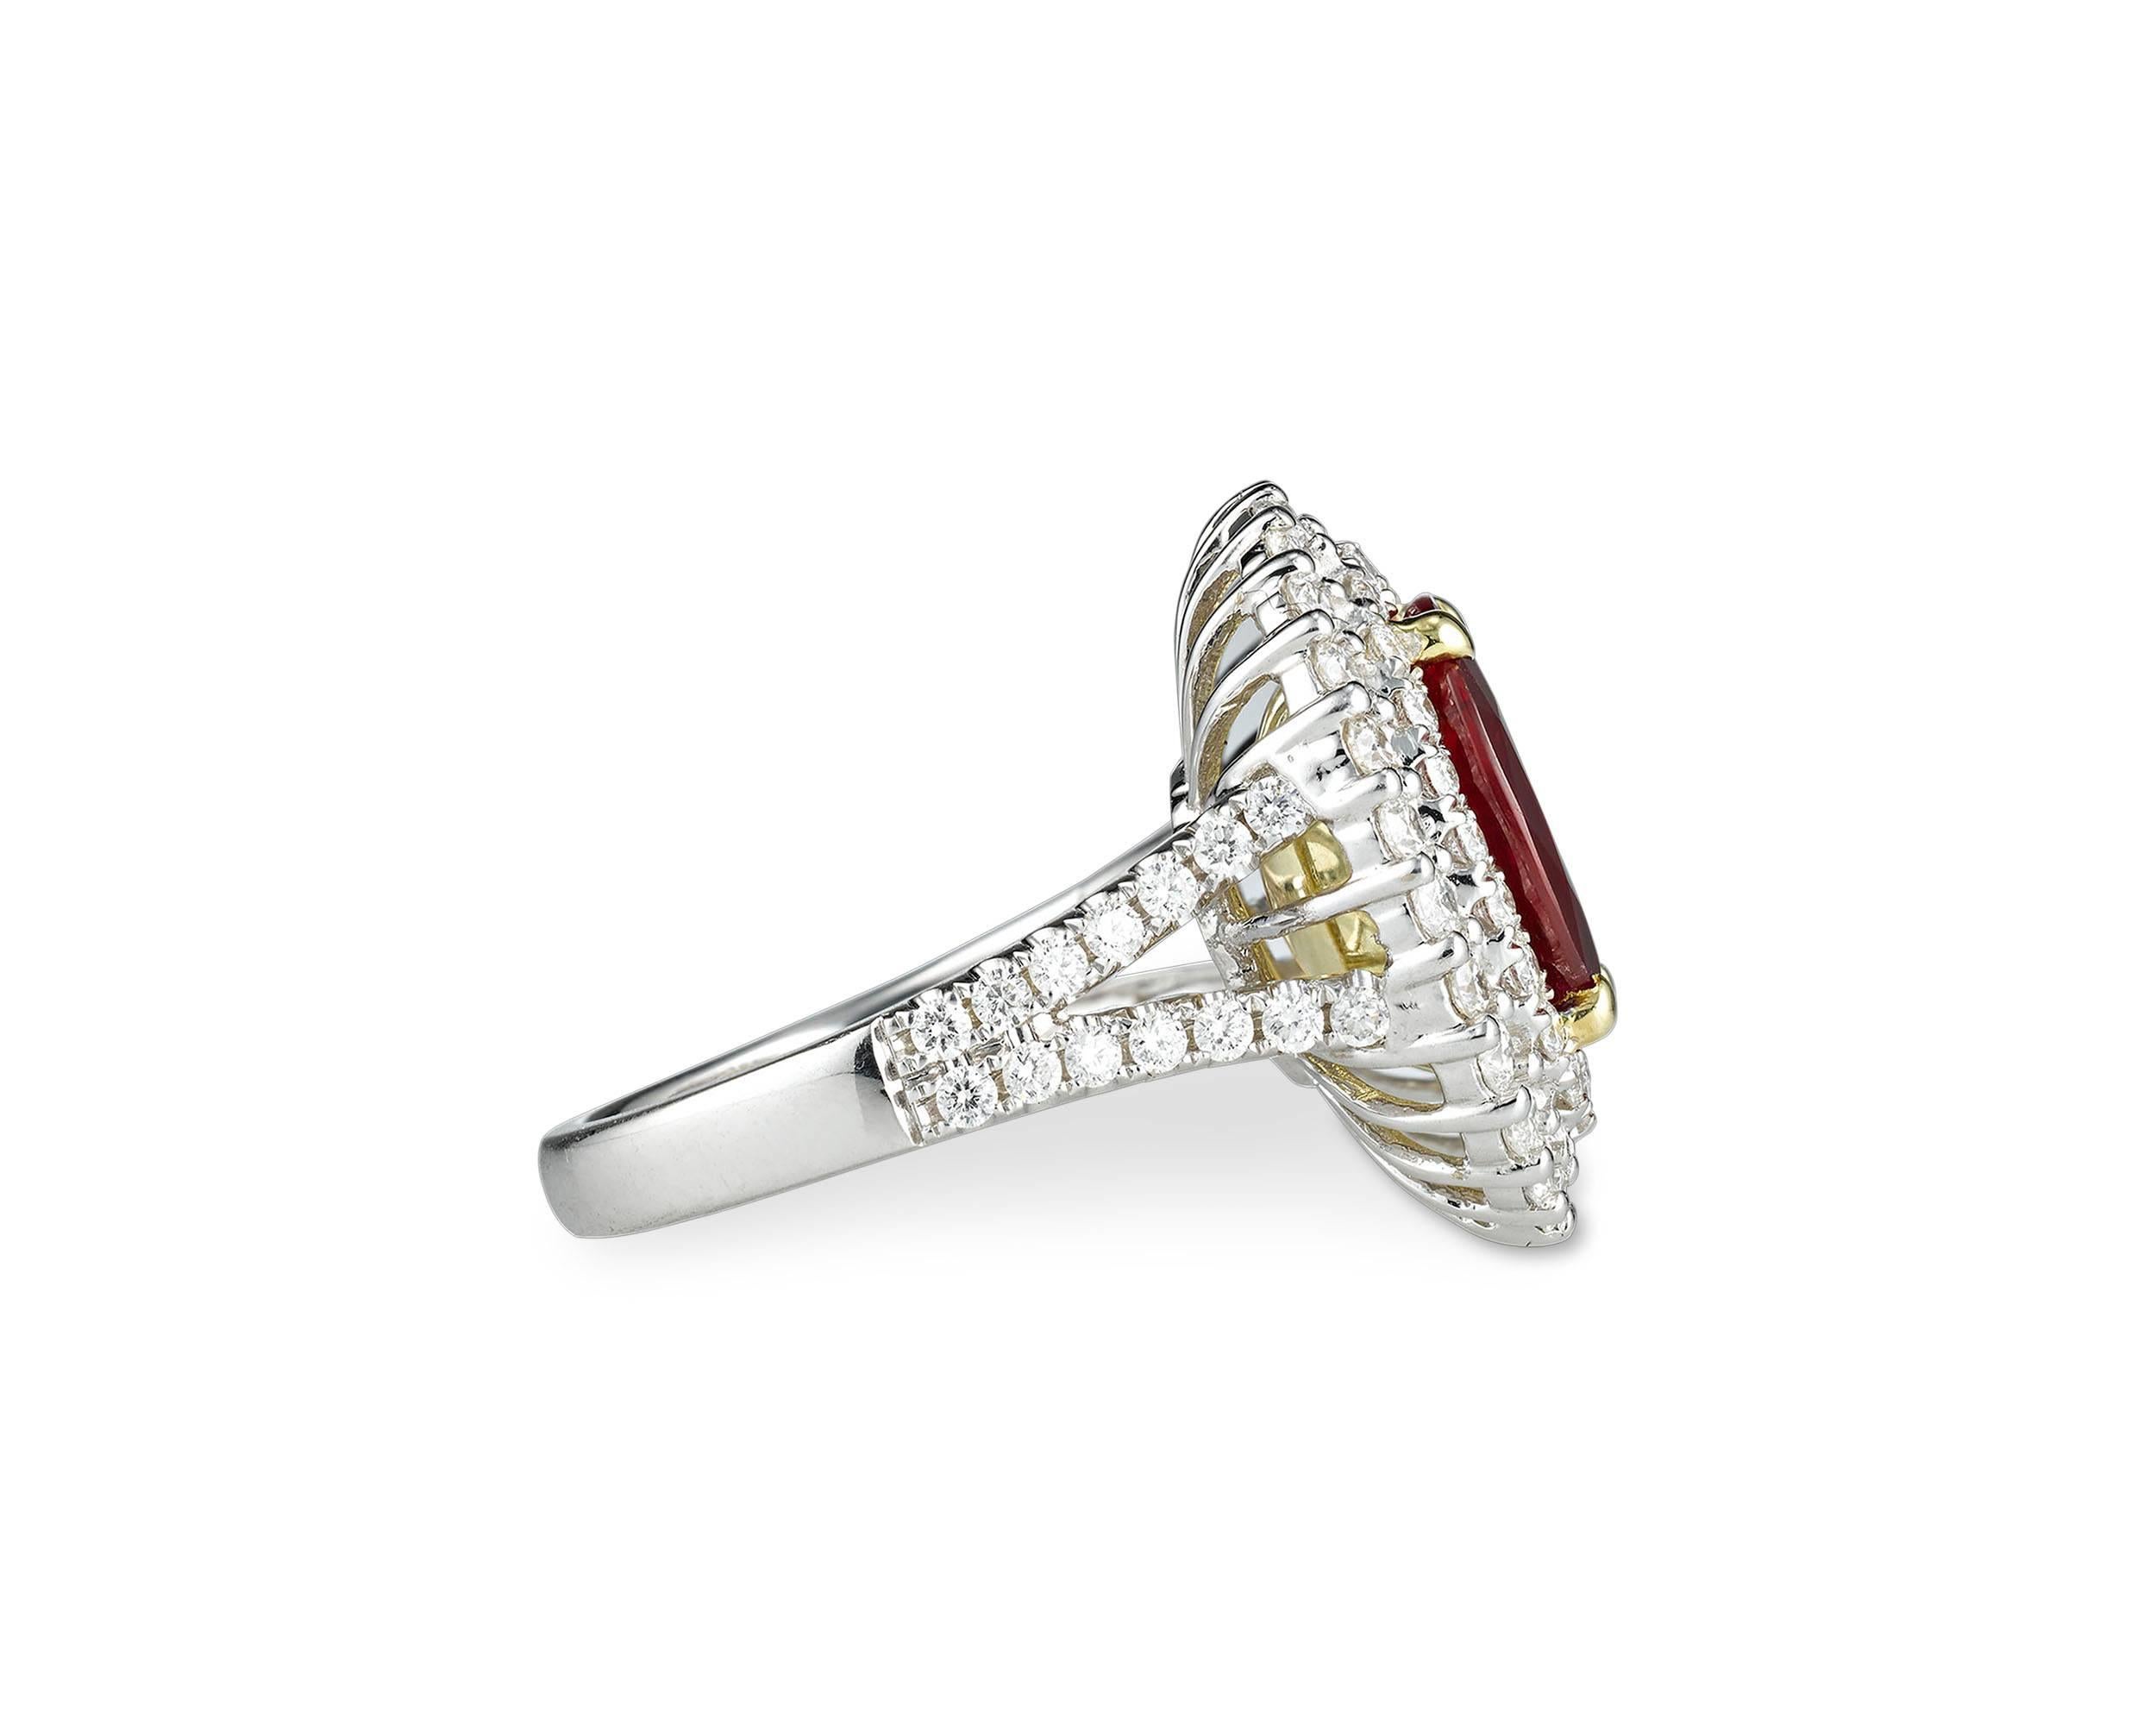 Un rubis ovale brillant de 3,95 carats rayonne au centre de cette élégante bague. Les diamants blancs qui l'entourent, d'un poids total de 1,53 carats, ajoutent à l'éclat spectaculaire de la pierre précieuse. Les diamants forment un double halo